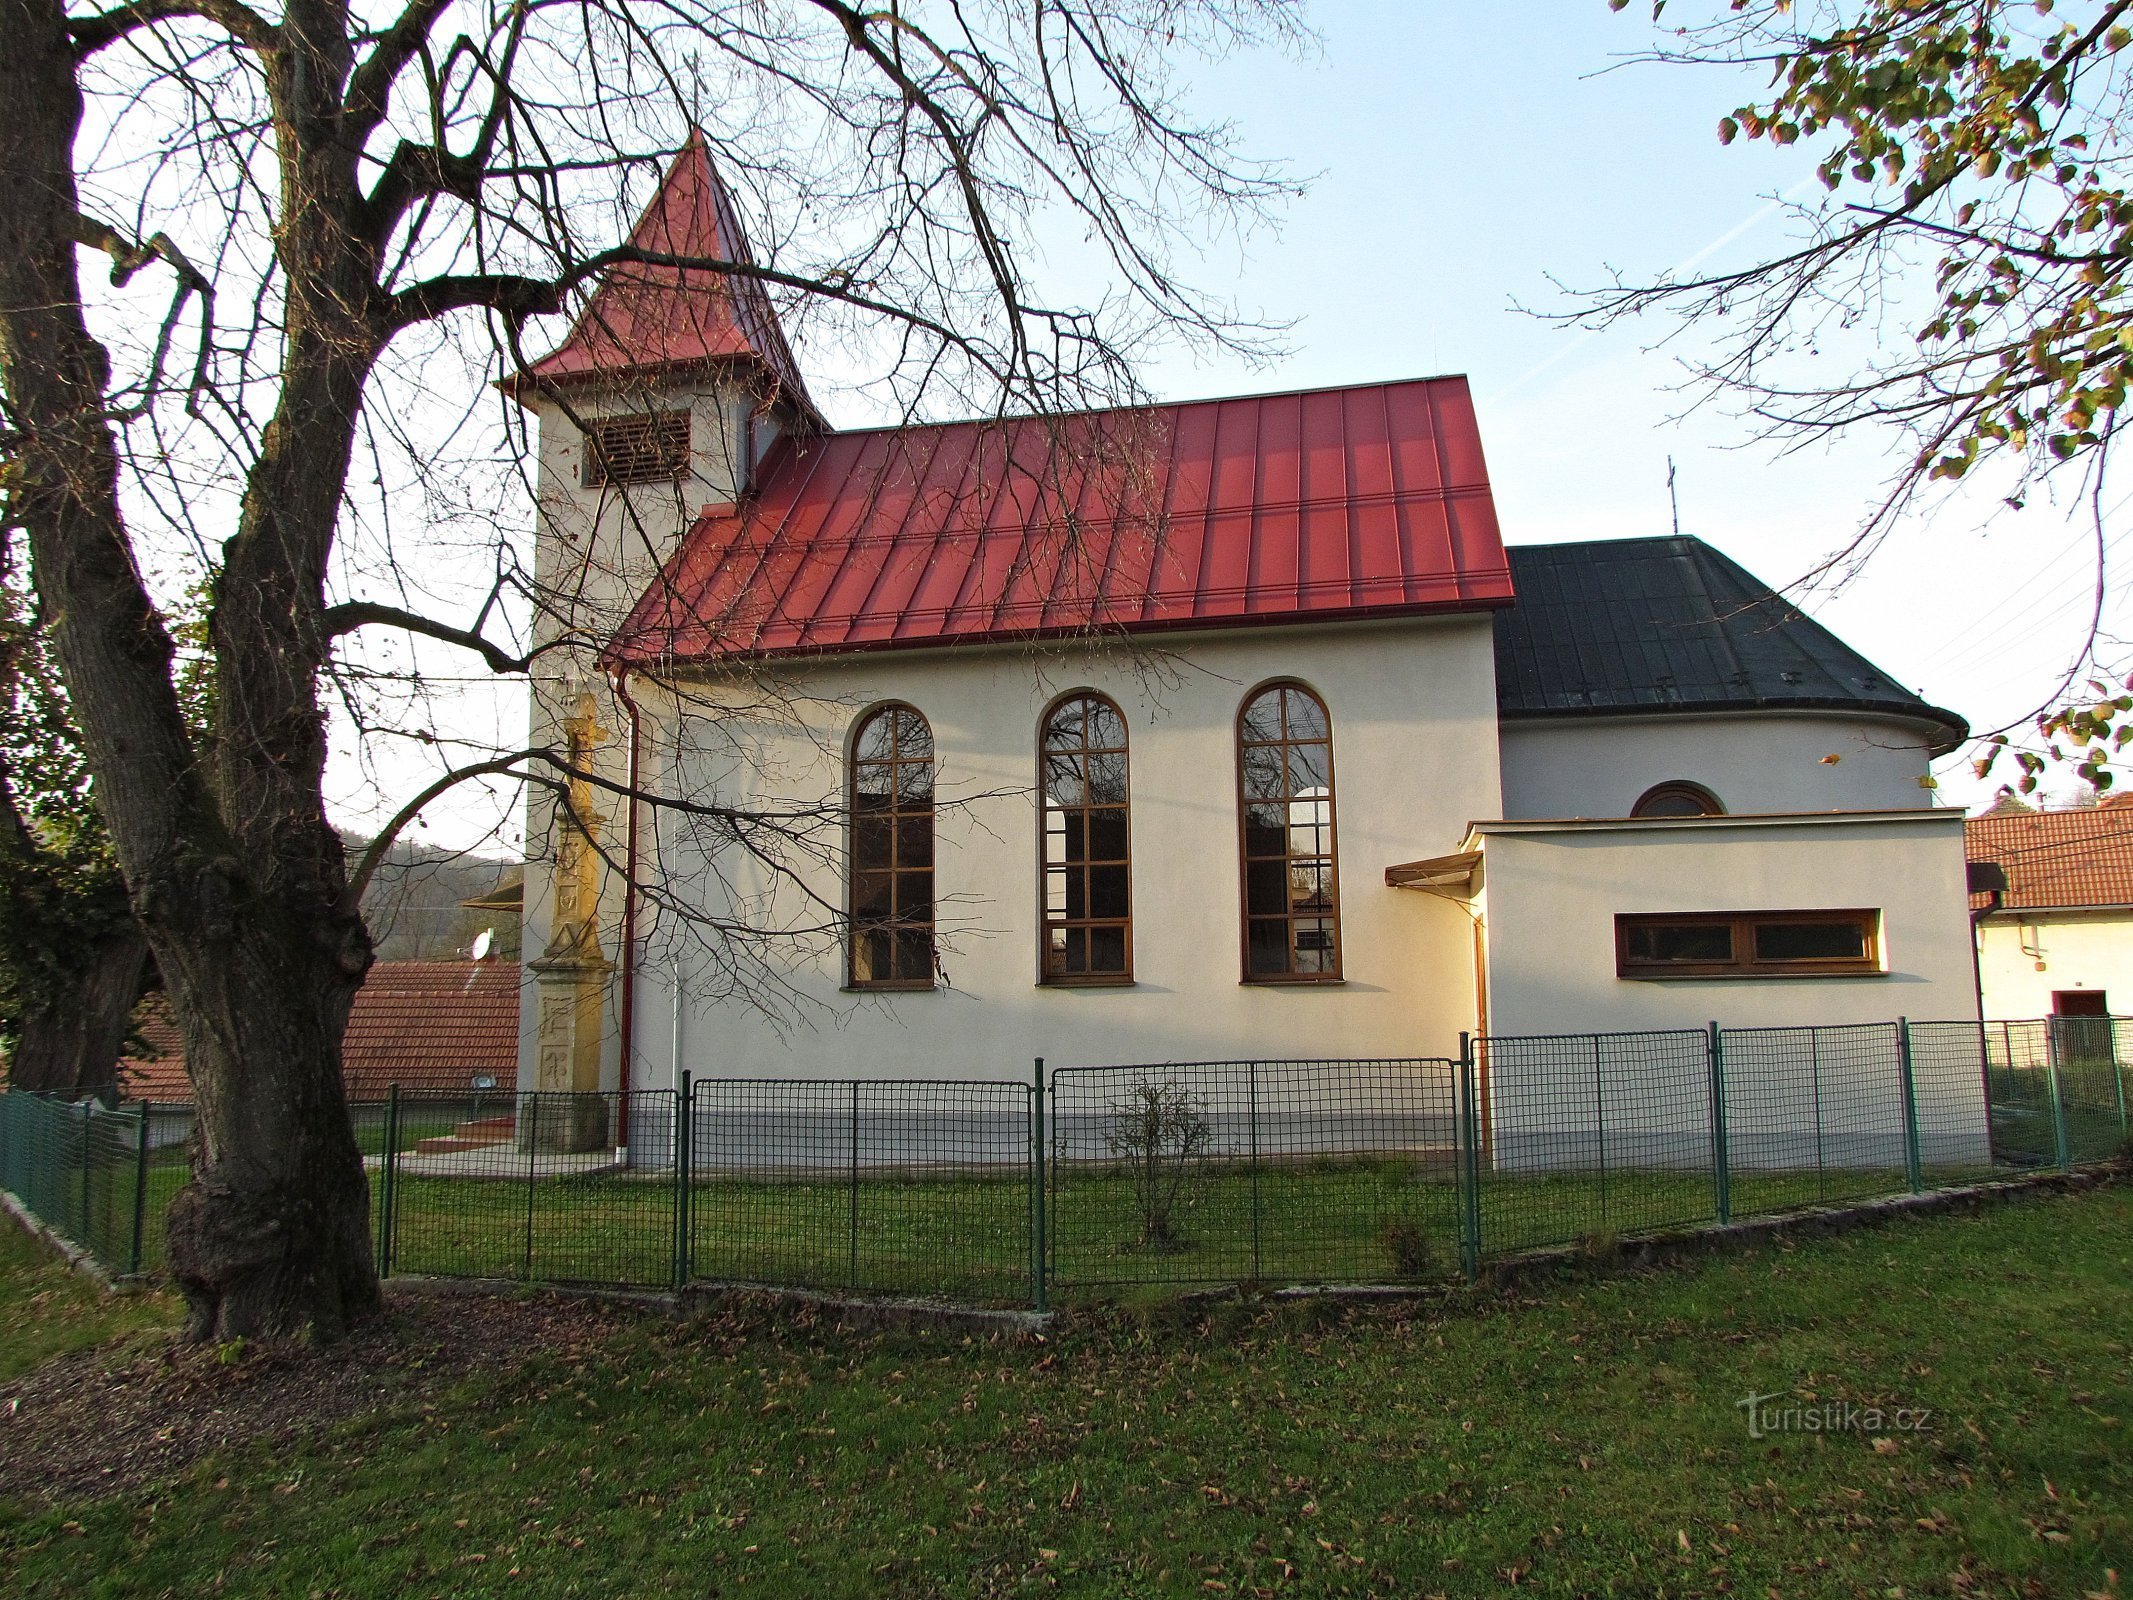 Kaňovice - Nhà nguyện của Đức Trinh nữ Maria